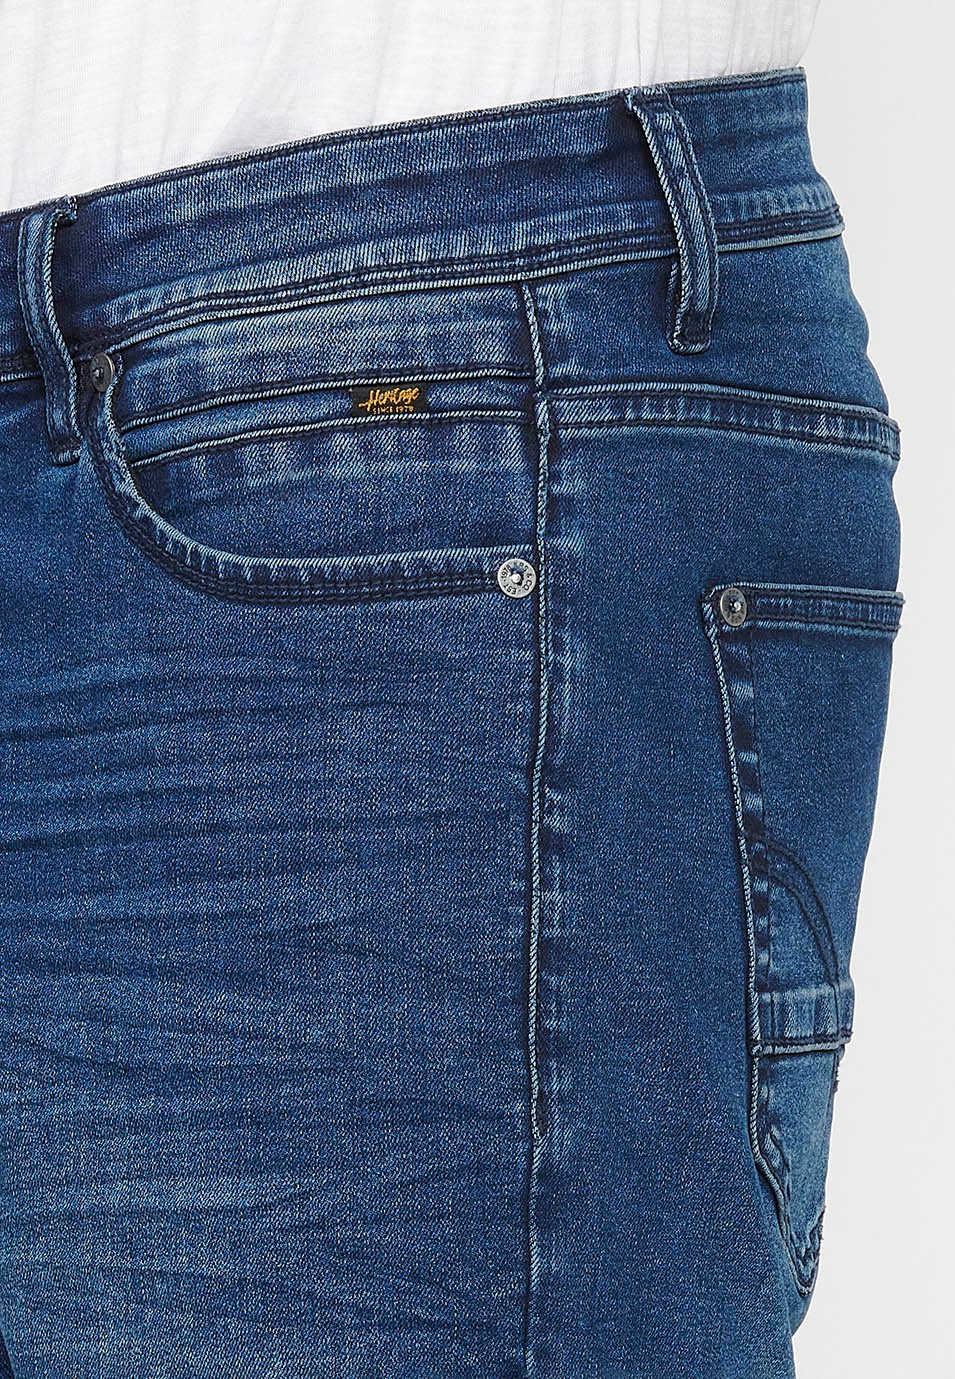 Jeansshorts mit Reißverschluss und Knopfverschluss vorne und fünf Taschen, eine blaue Tasche für Herren